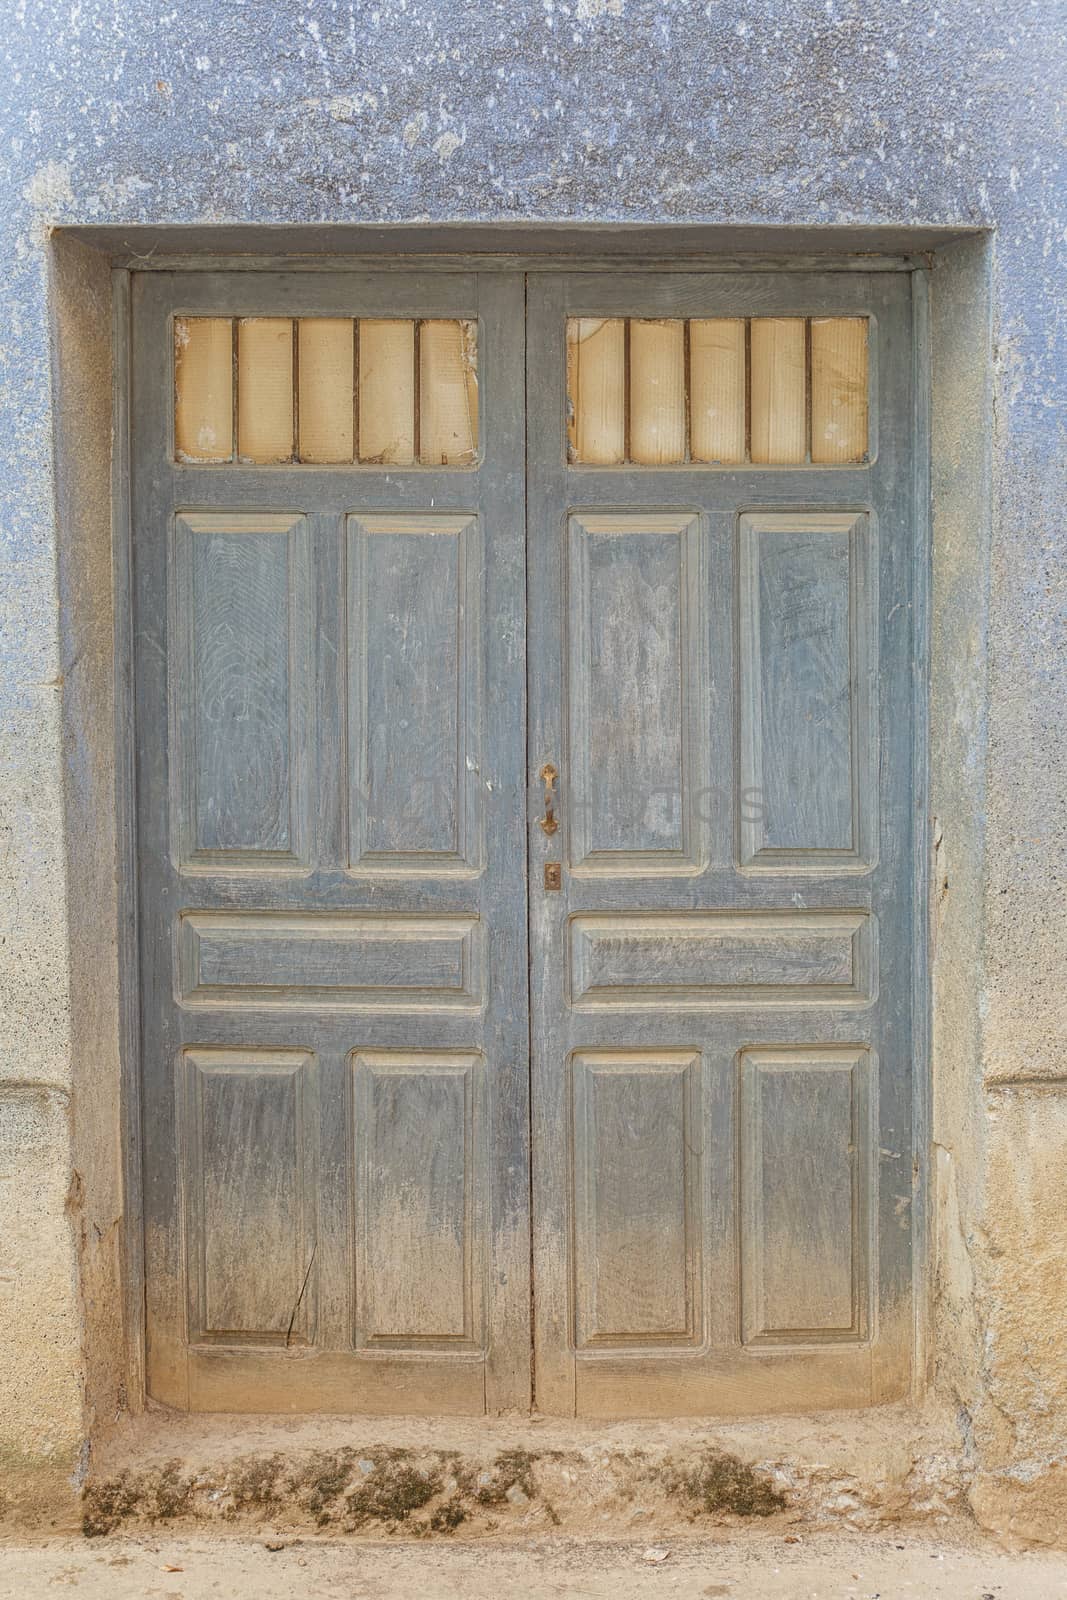 Old rustic wooden door covered in dust